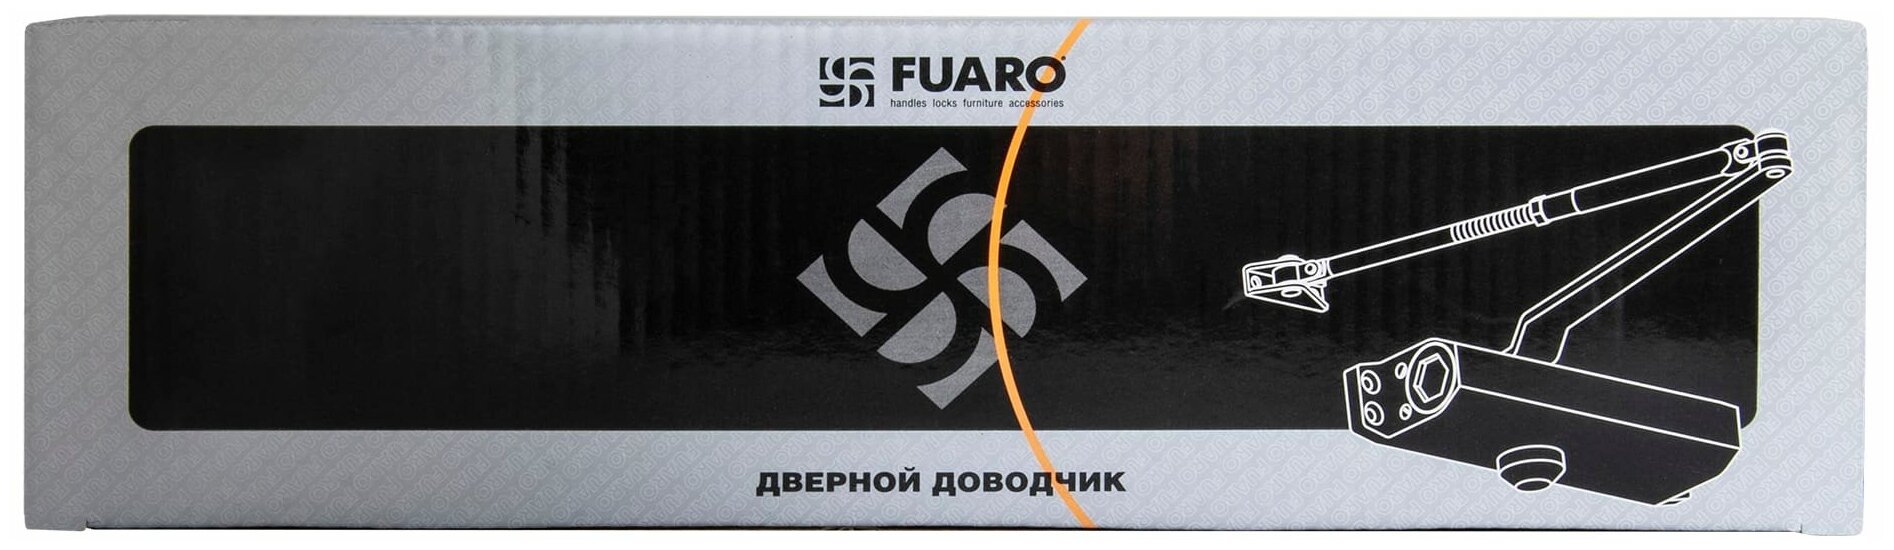 Дверные ручки и аксессуары FUARO - фото №4